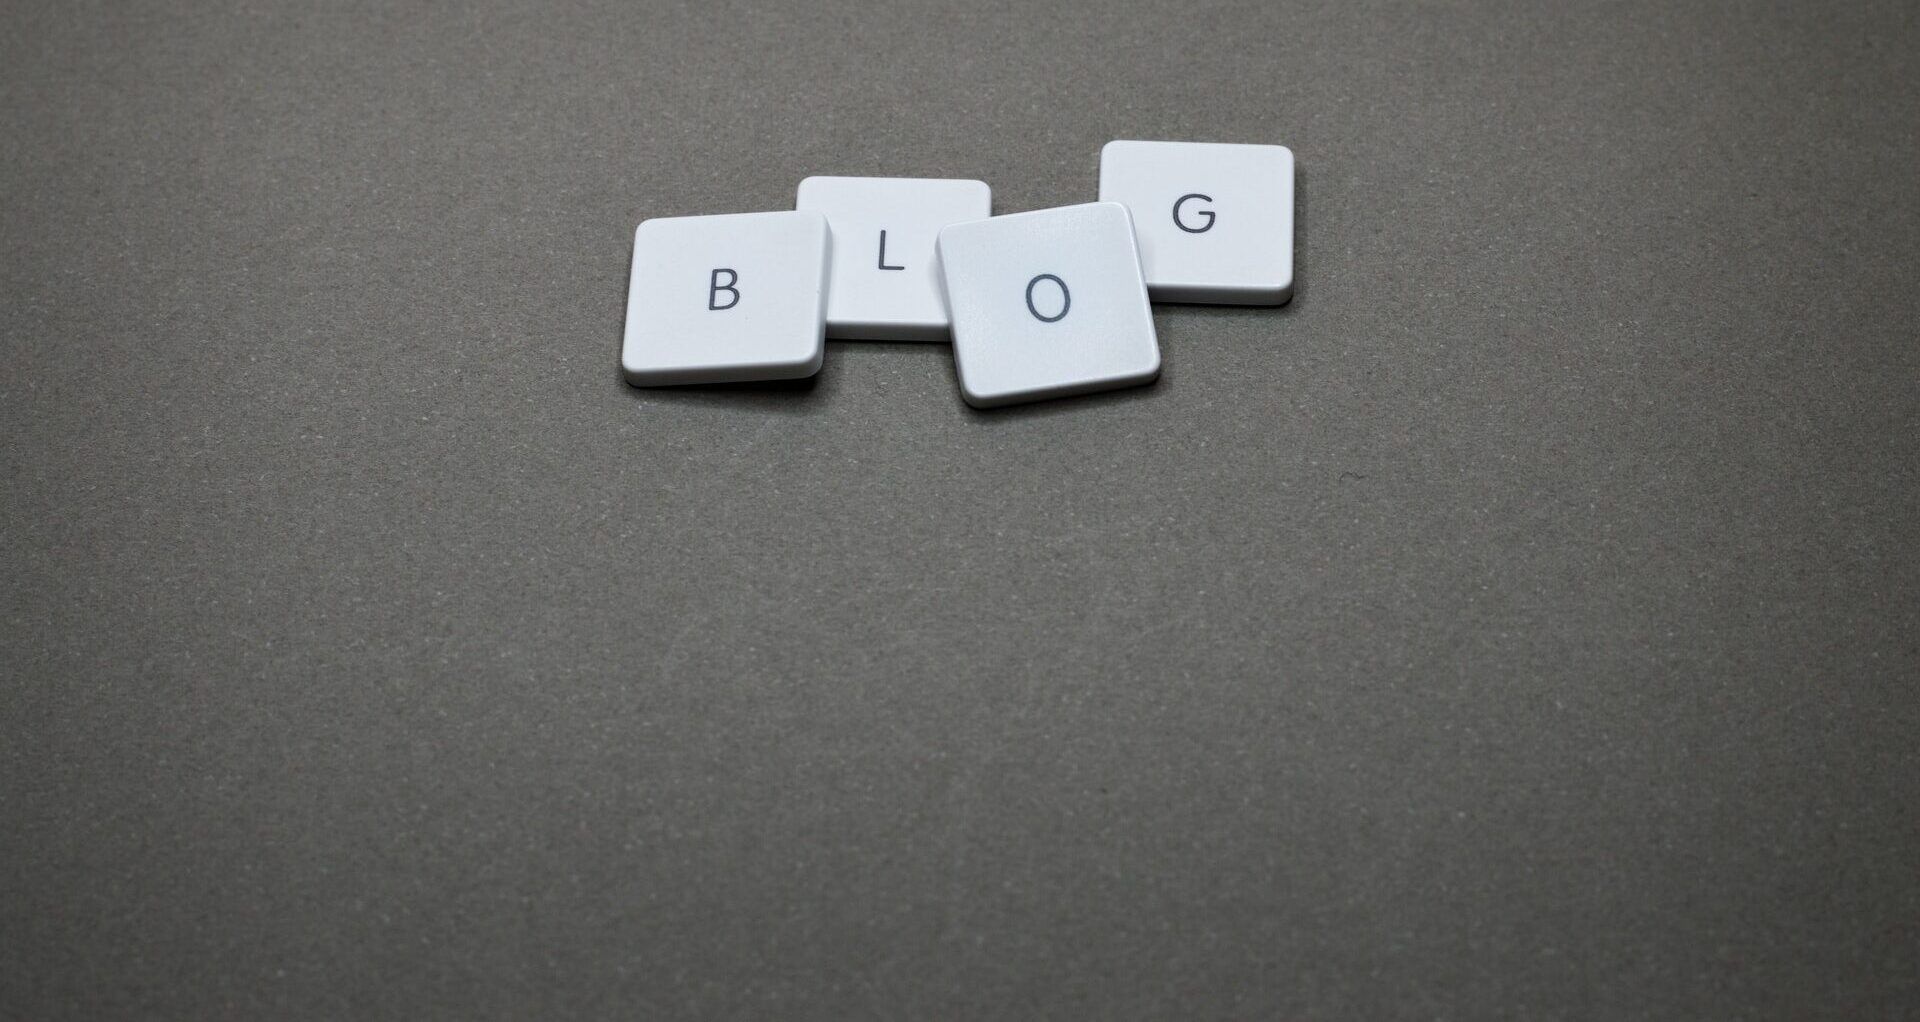 Come guadagnare con un blog e come aprirlo?